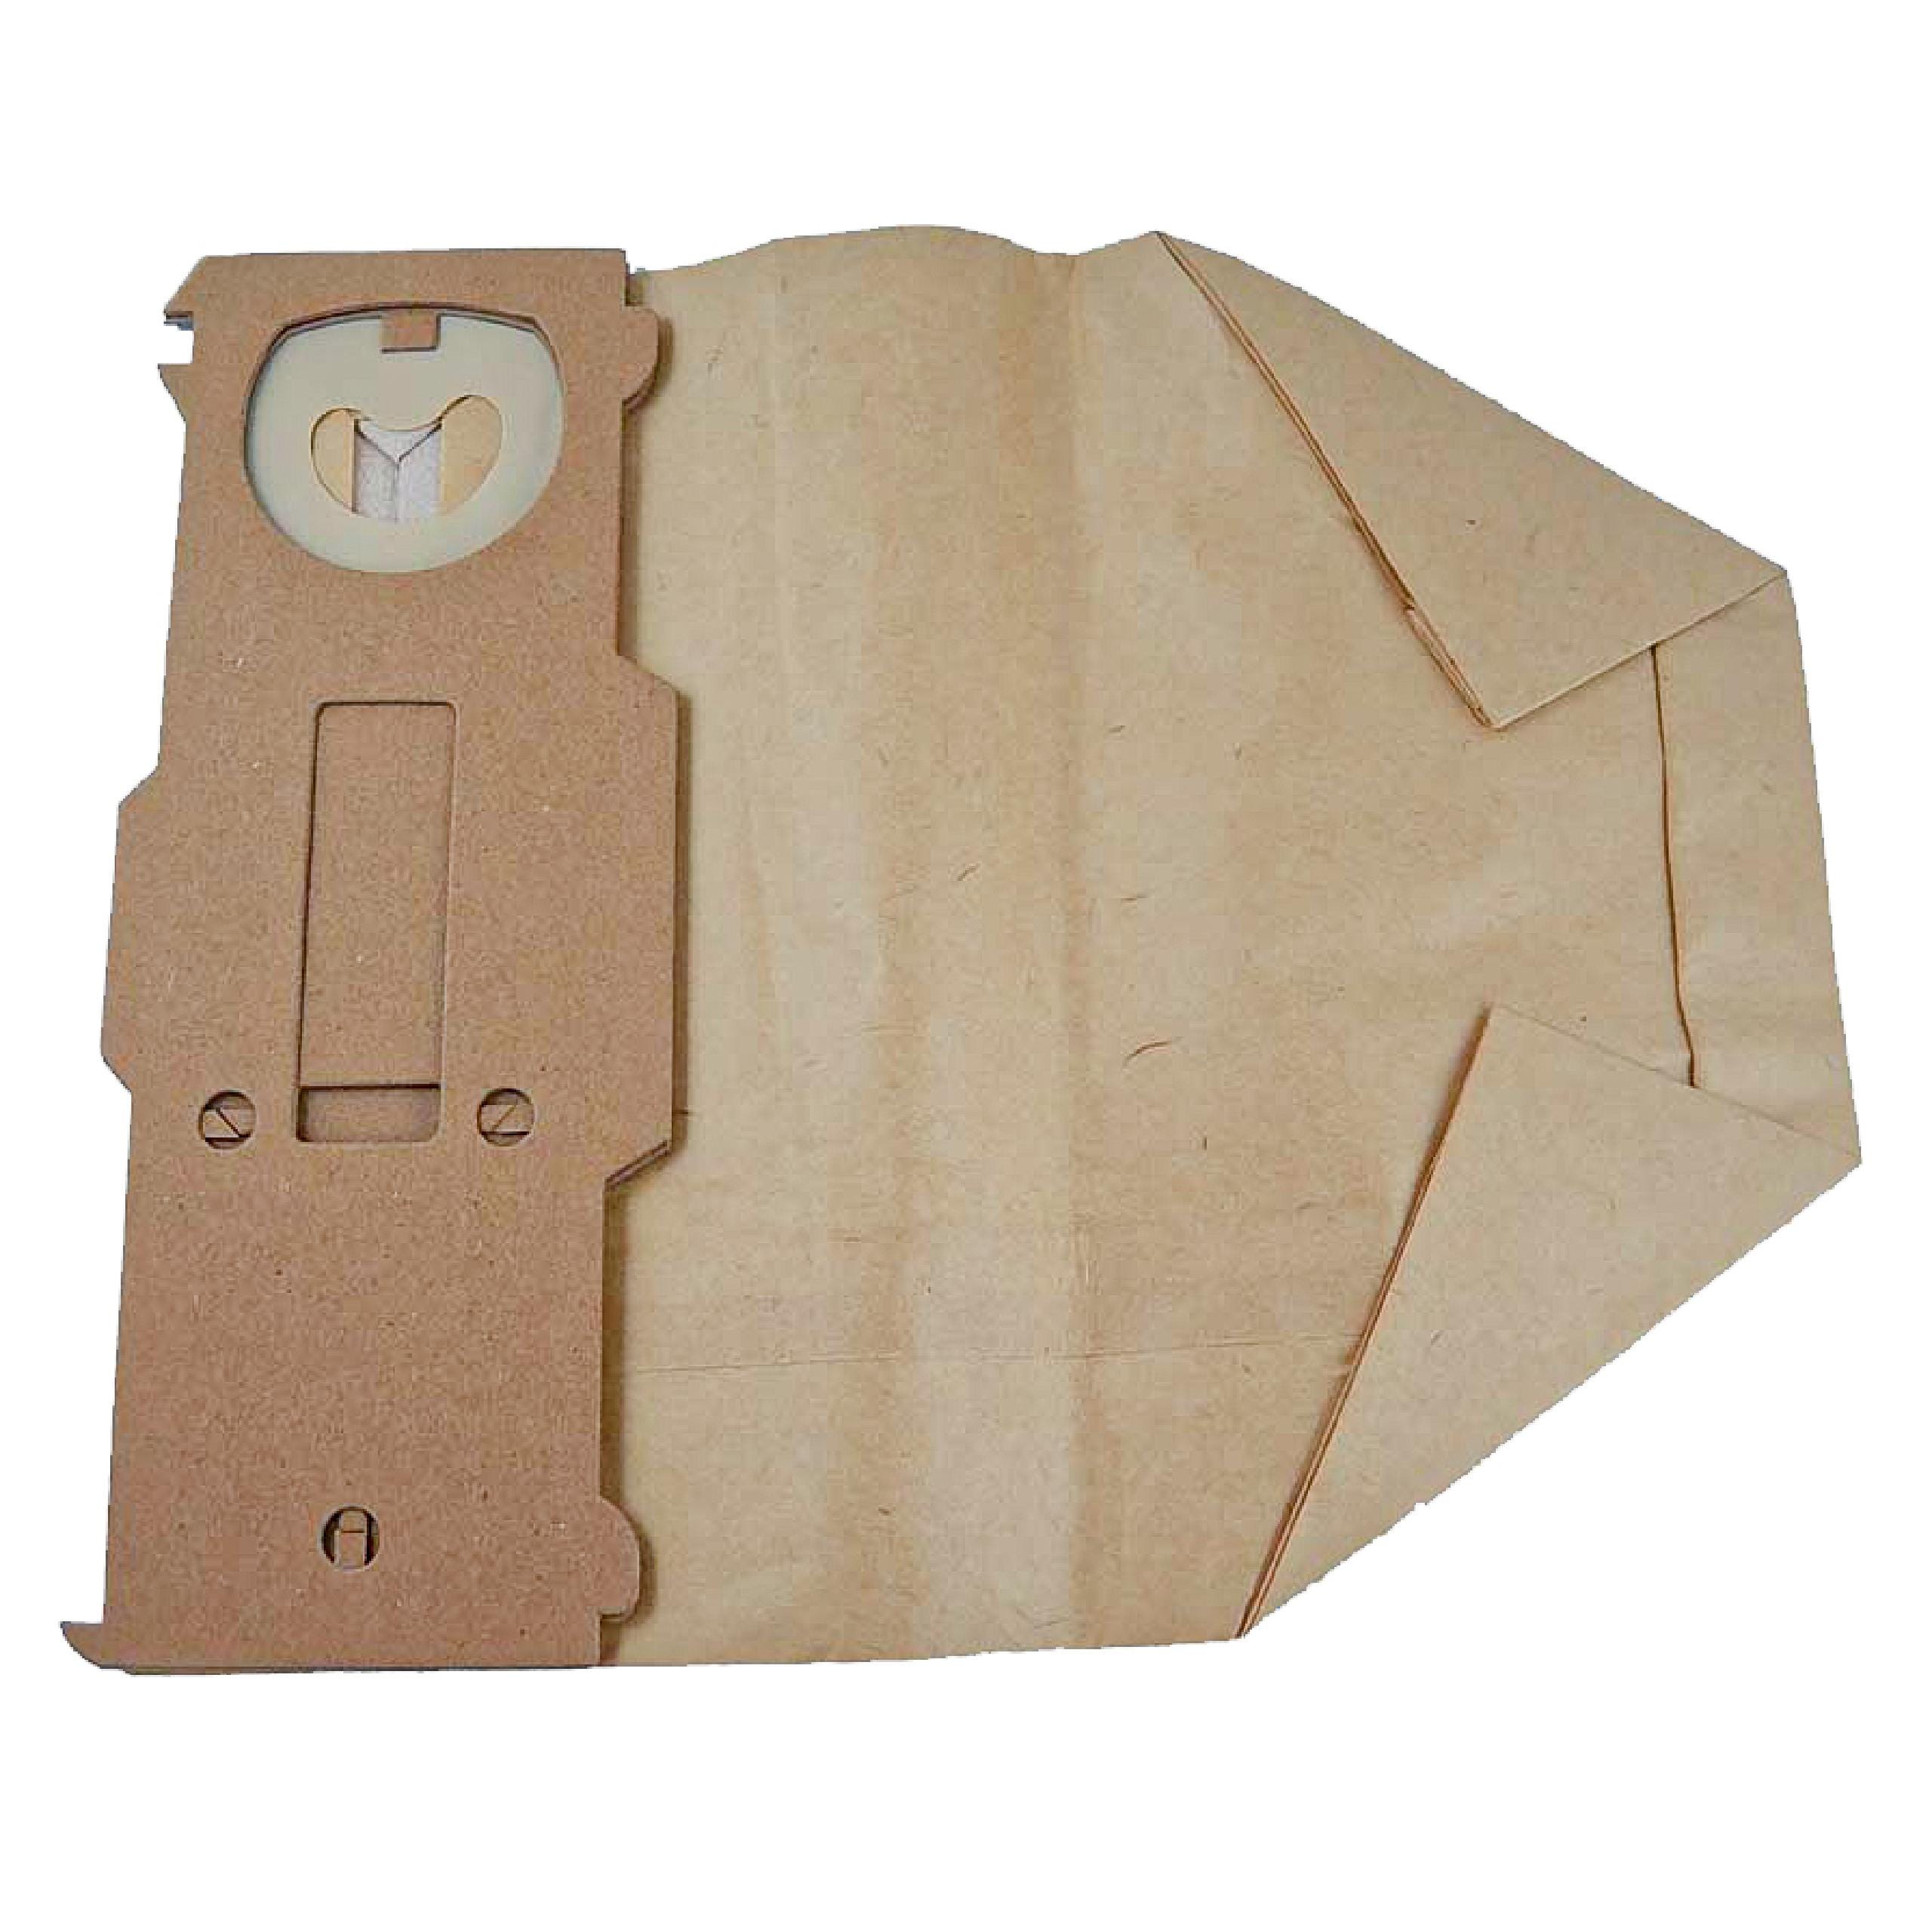 Vhbw 10x sacchetto compatibile con Vorwerk folletto VK131SC aspirapolvere -  in carta, 24,5cm x 20,5cm, marrone